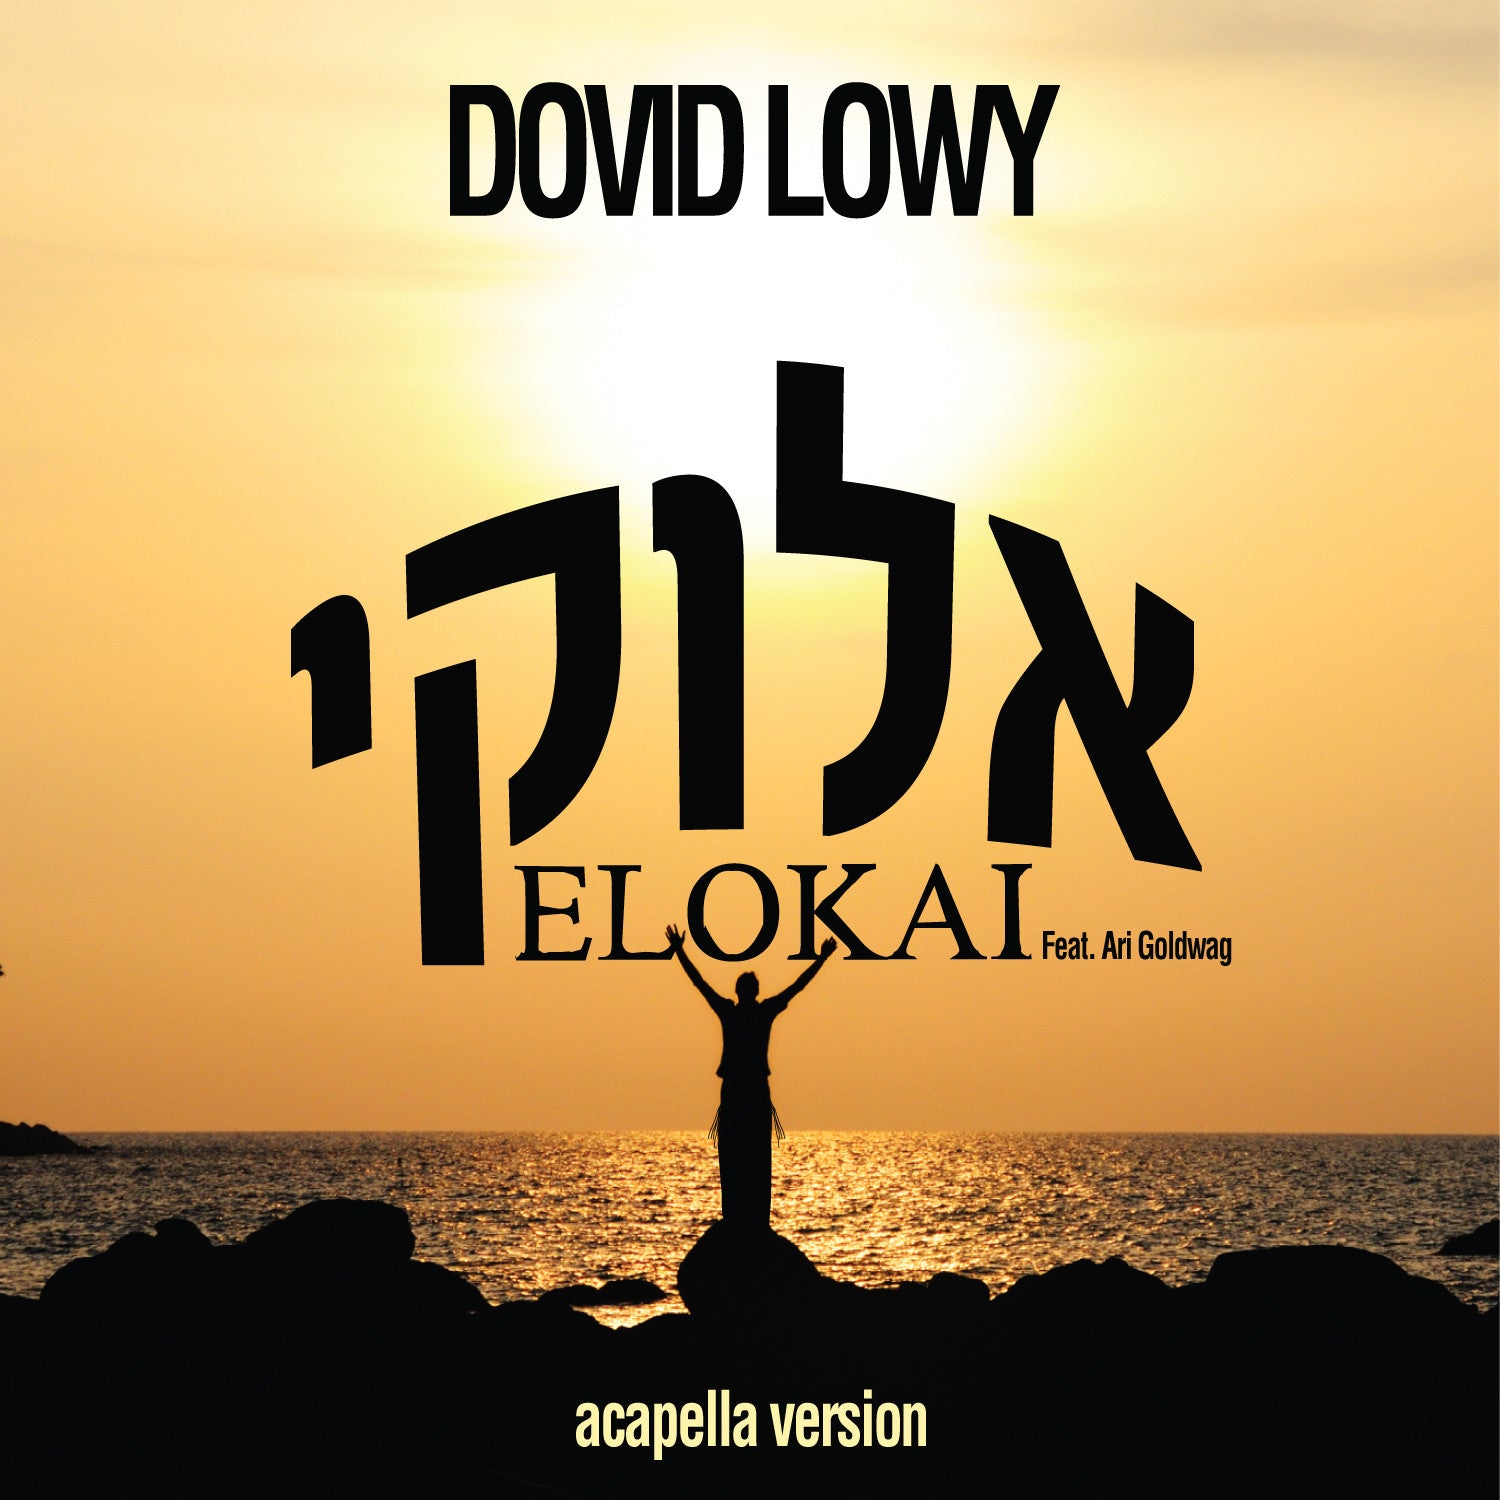 Dovid Lowy - Elokai - סינגל אקפלה חופשי - feat. ארי גולדוואג